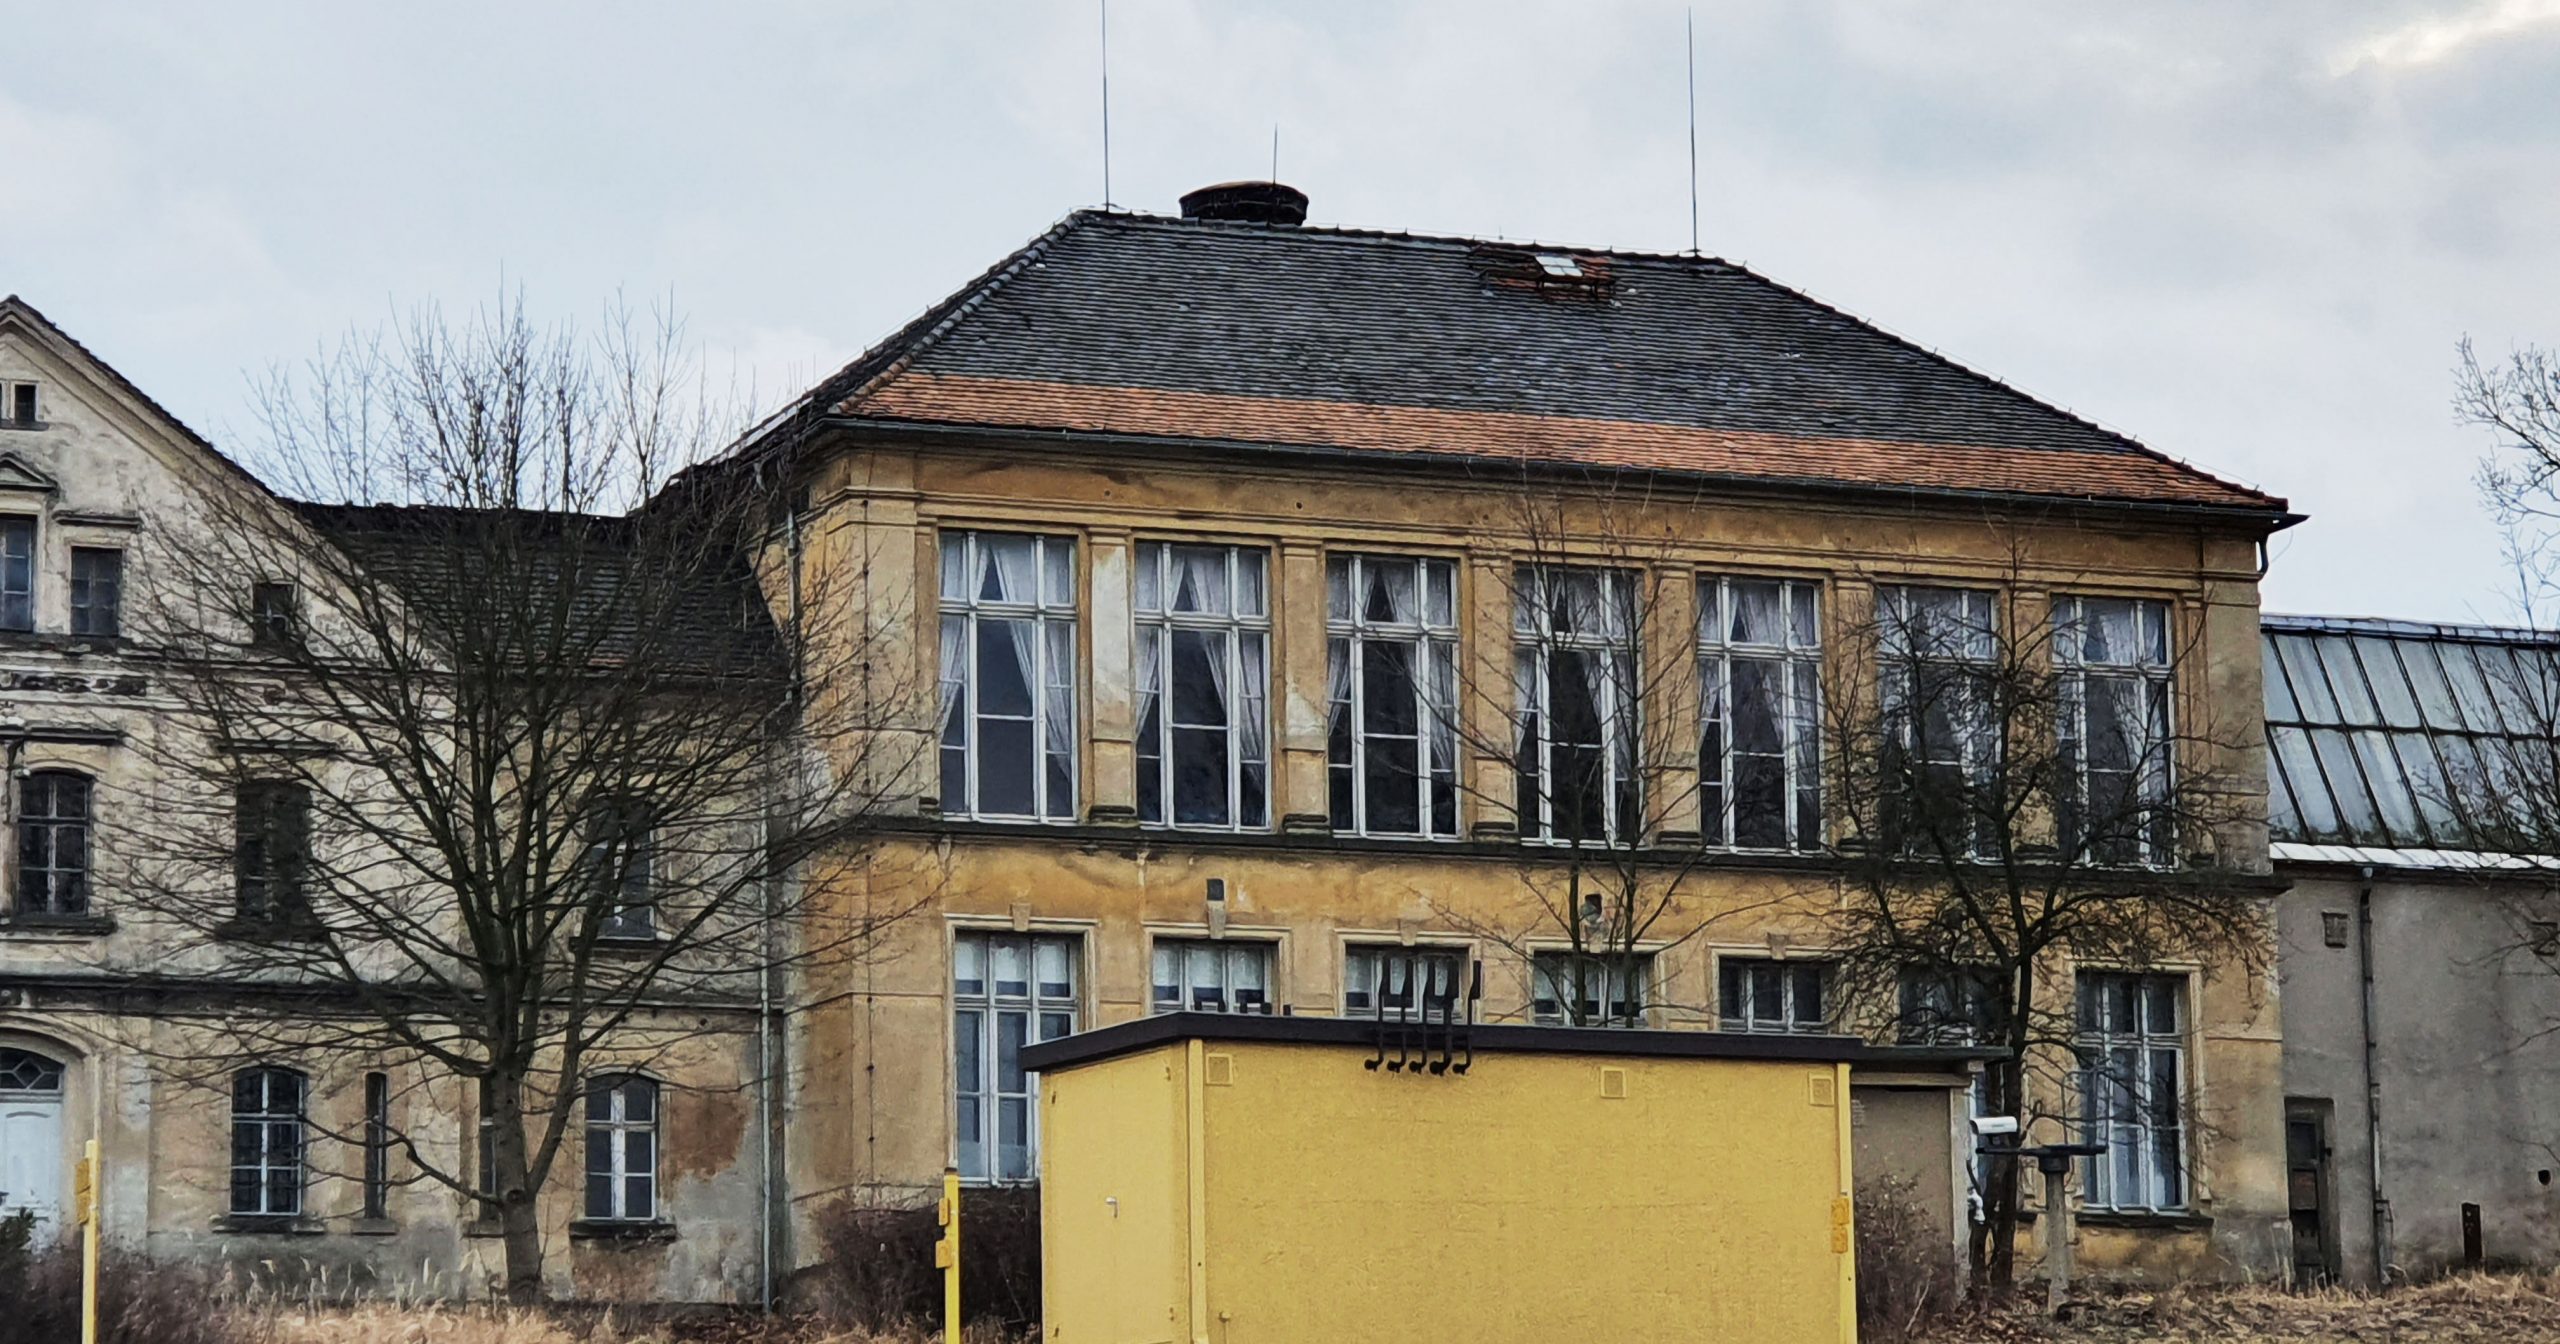 Oberlausitzer Webschule in Großschönau